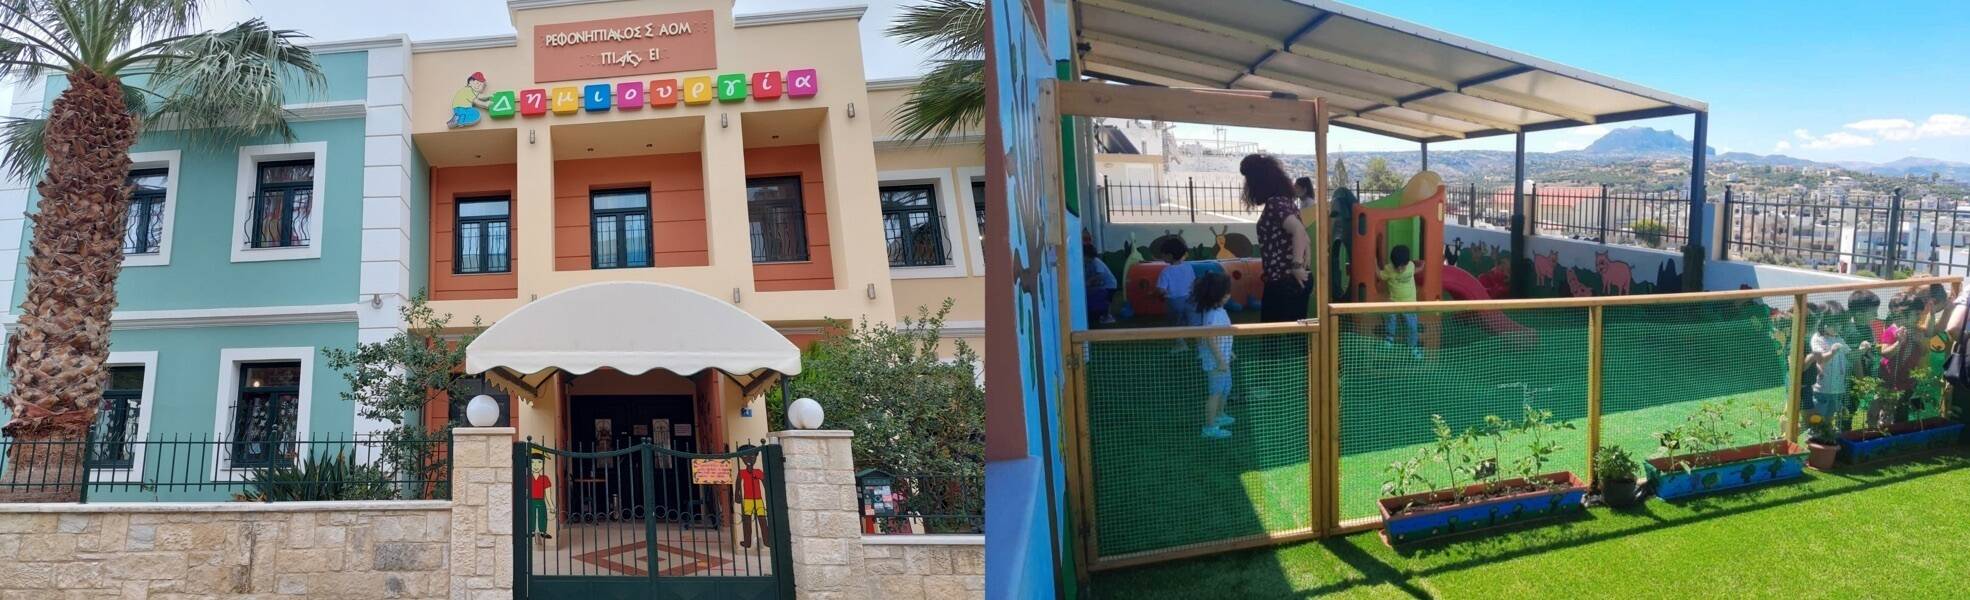 Social volunteering in kindergarten on Crete